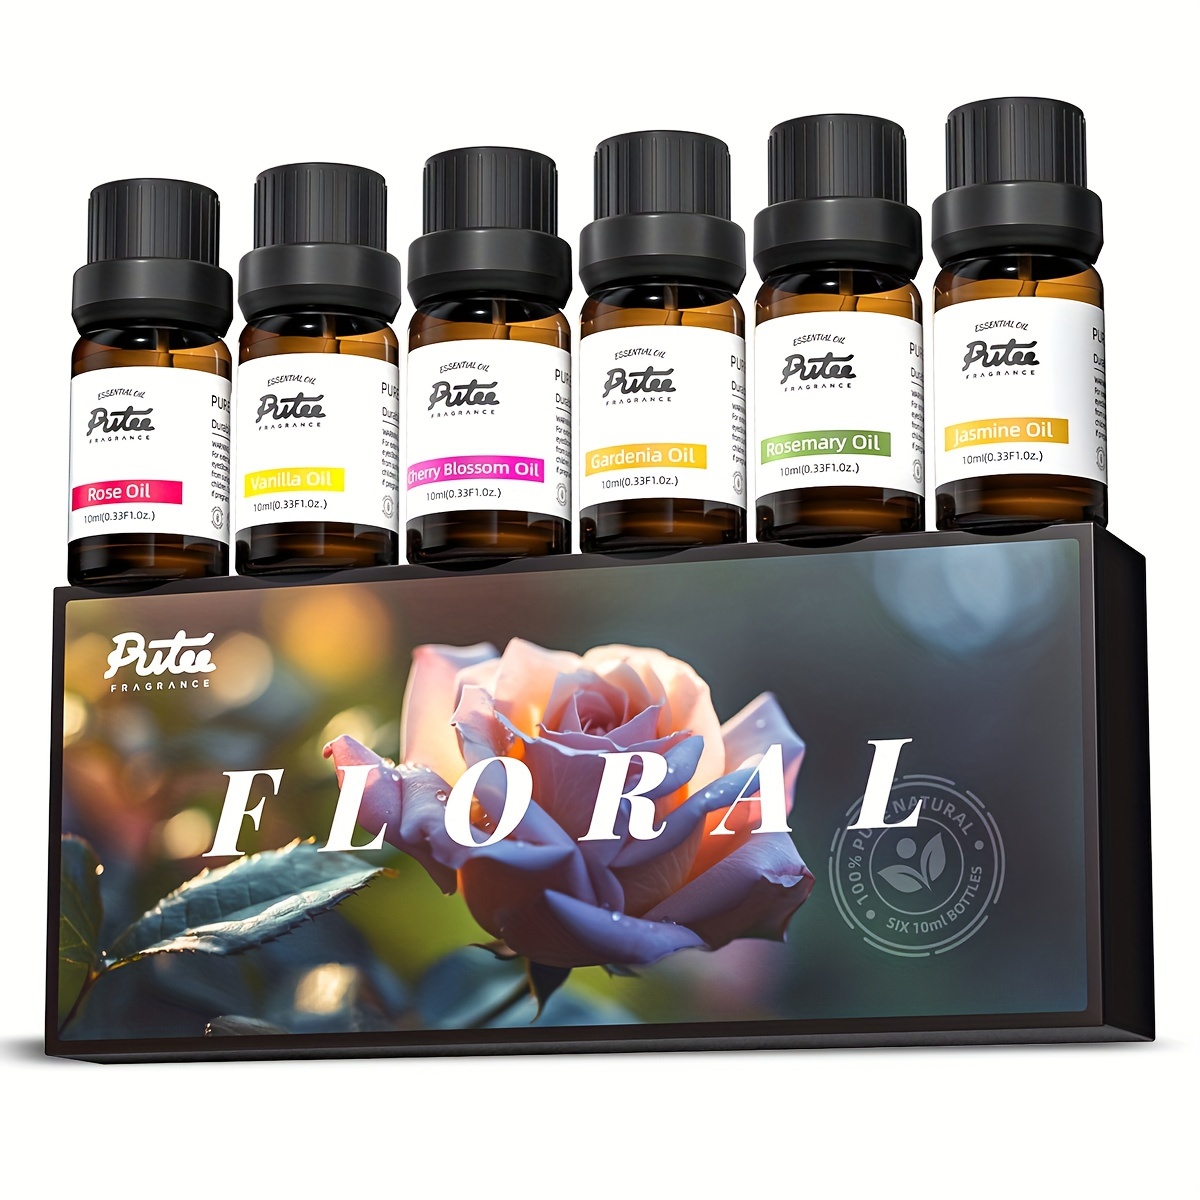 AKARZ Freesia Essential Oil Natural Aromatic for Aromatherapy